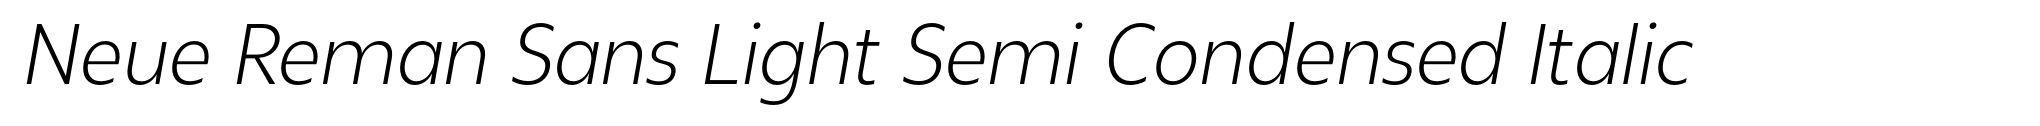 Neue Reman Sans Light Semi Condensed Italic image